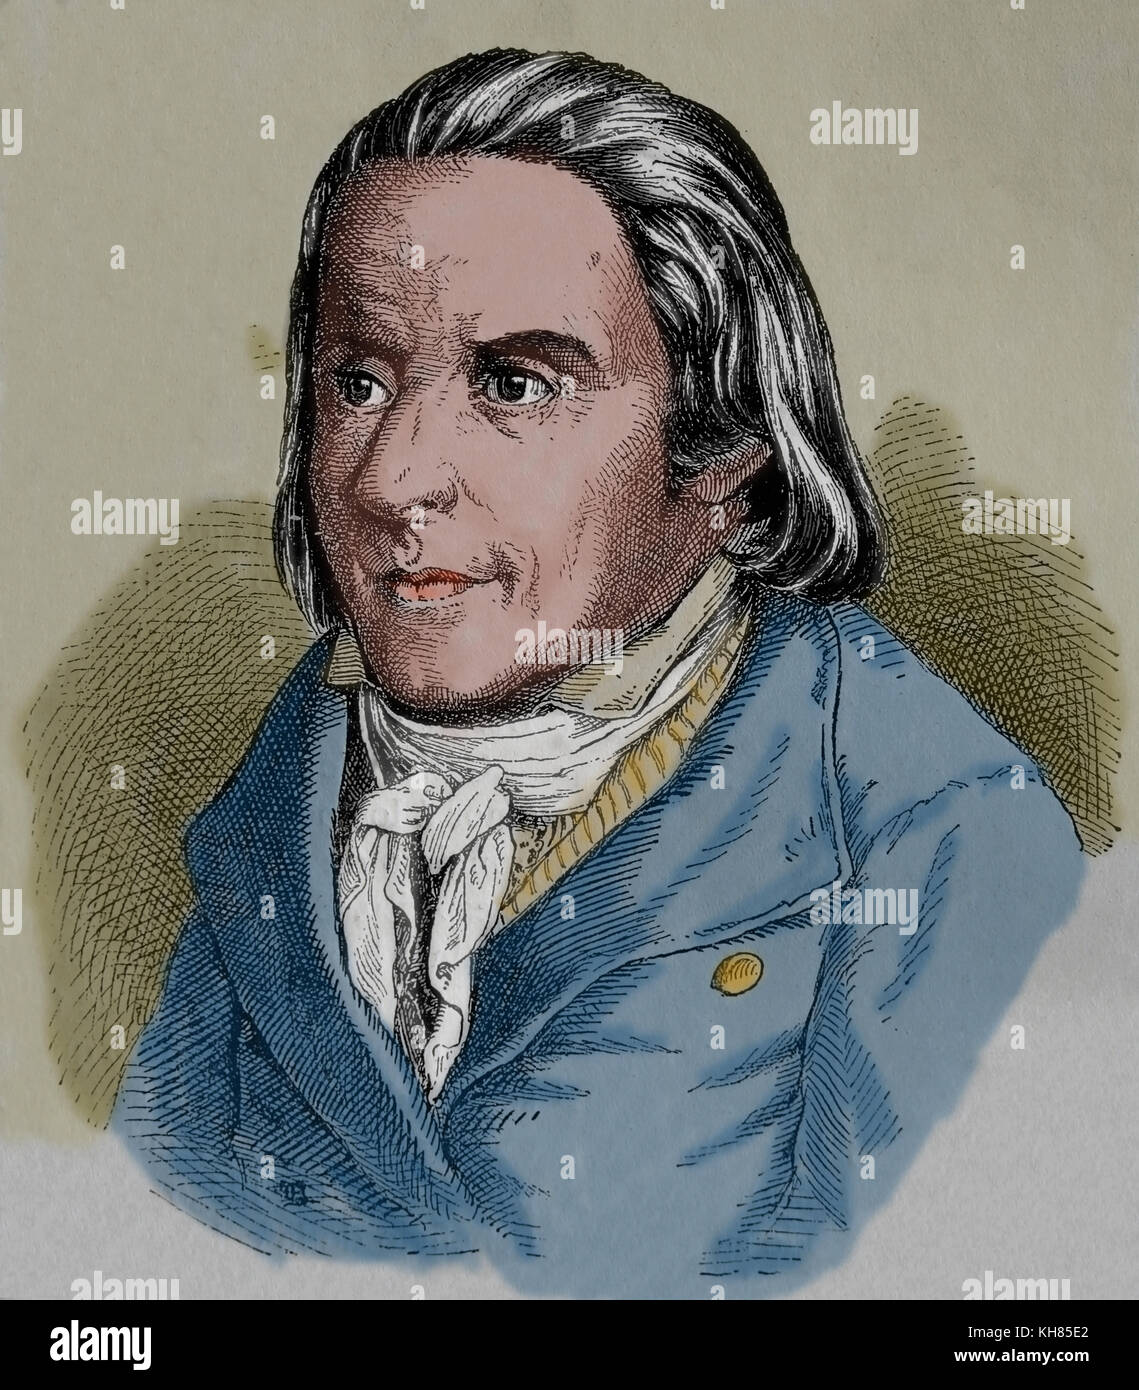 Johann Heinrich Pestalozzi (1746-1827), Schweizer Pädagoge und Bildung Reformer. der deutschen Romantik Schule. Gravur. Stockfoto